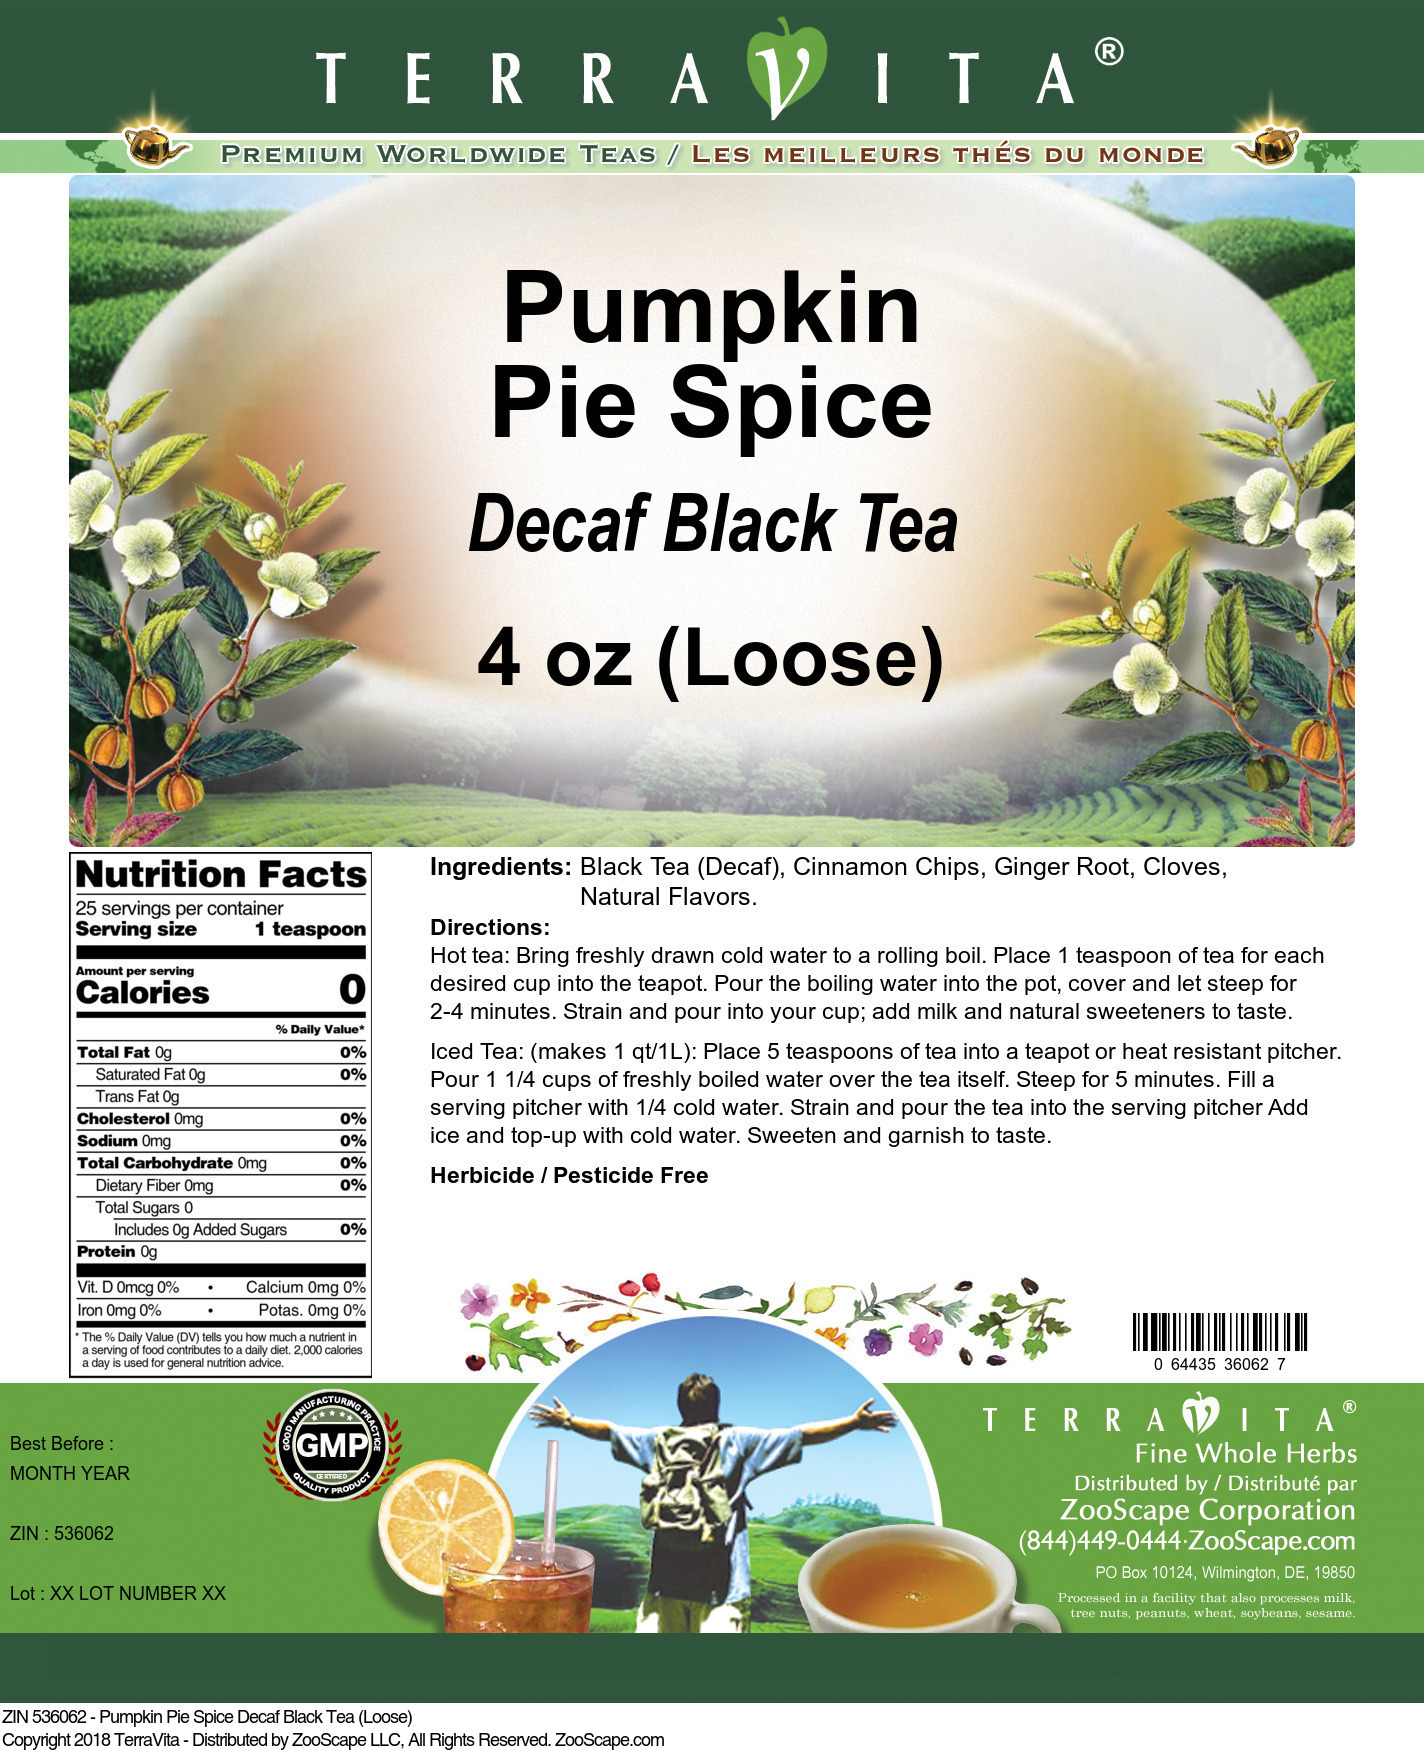 Pumpkin Pie Spice Decaf Black Tea (Loose) - Label